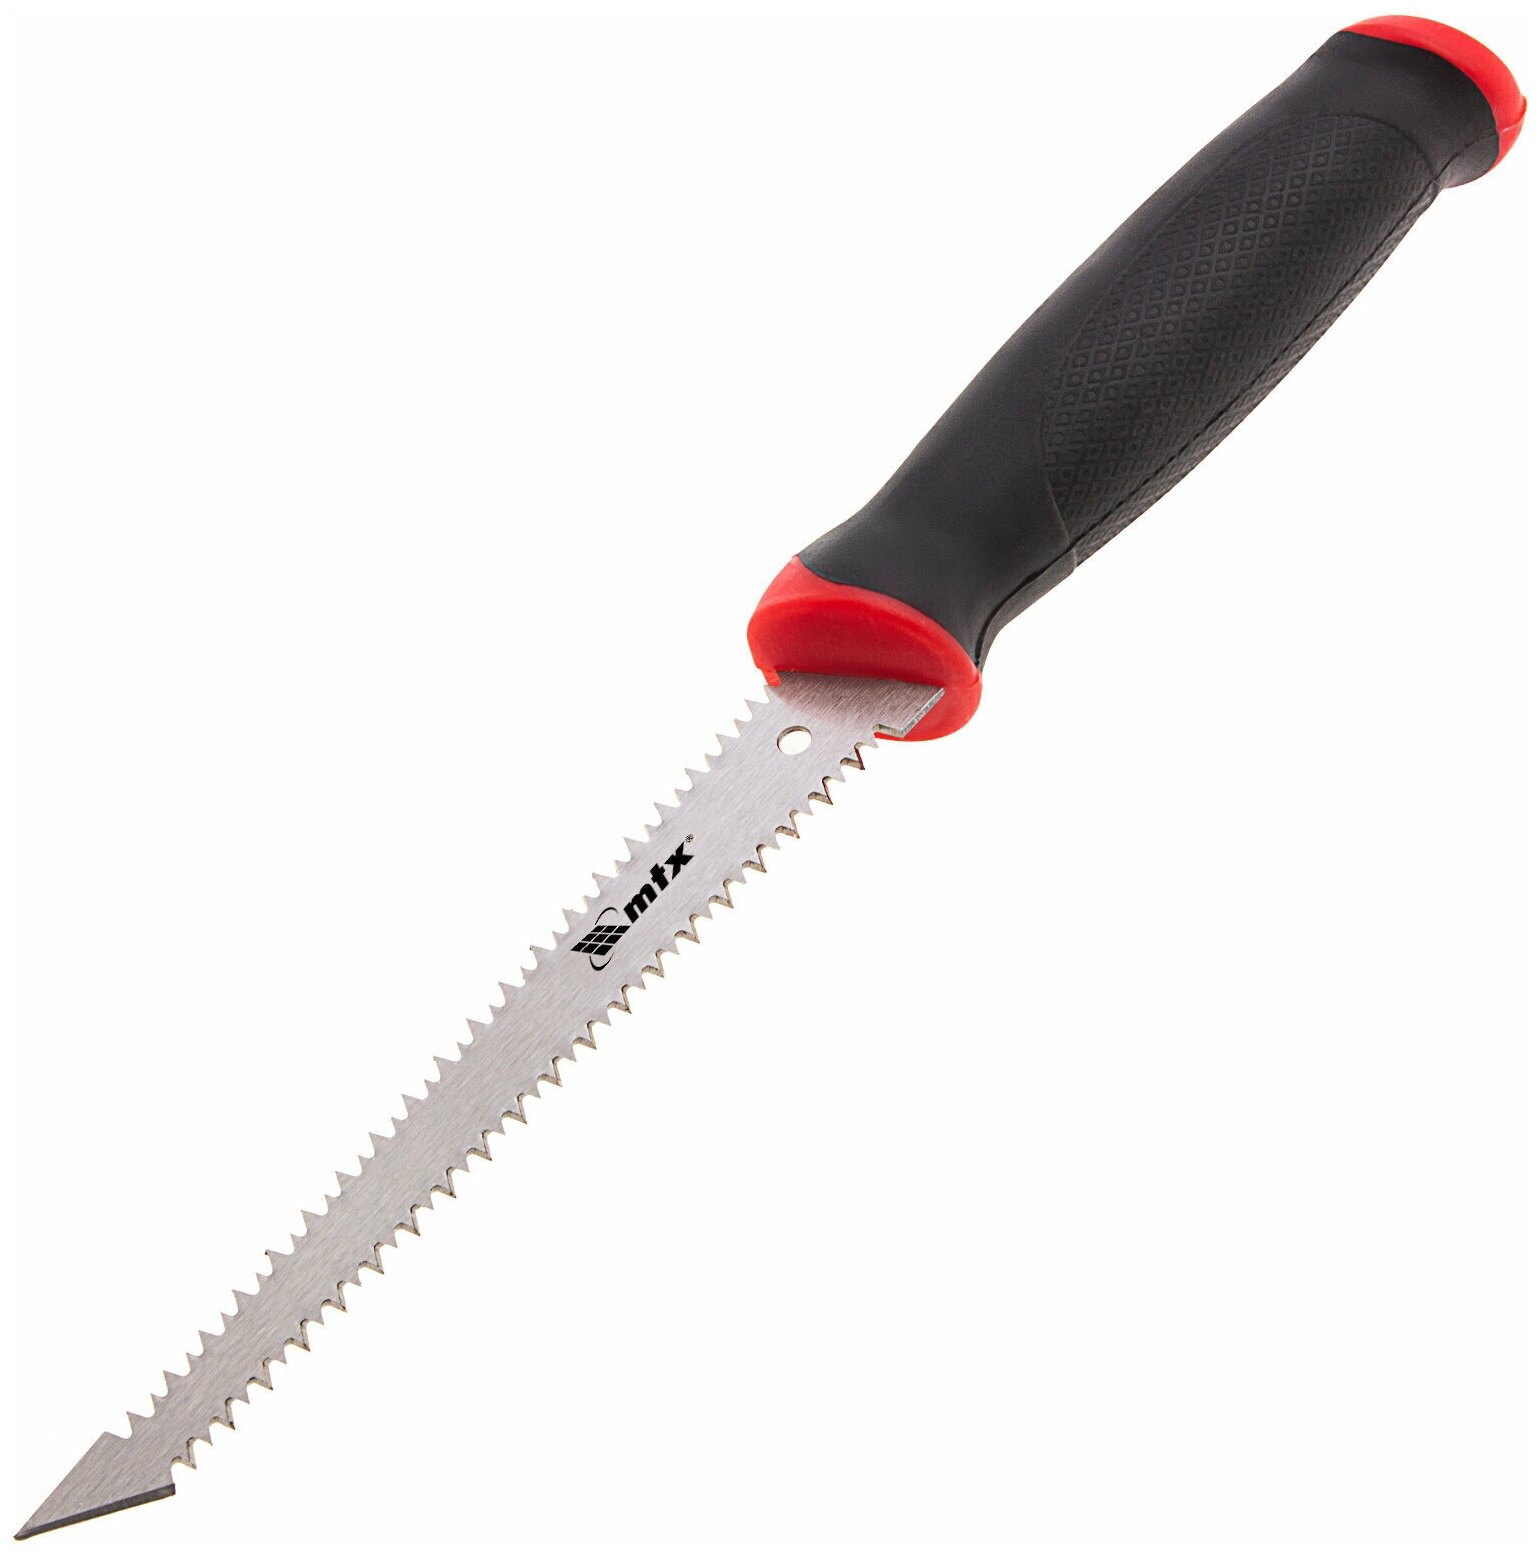 Ножовка по гипсокартону, 180 мм, две рабочие кромки полотна, двухкомпонентная рукоятка Matrix 23392